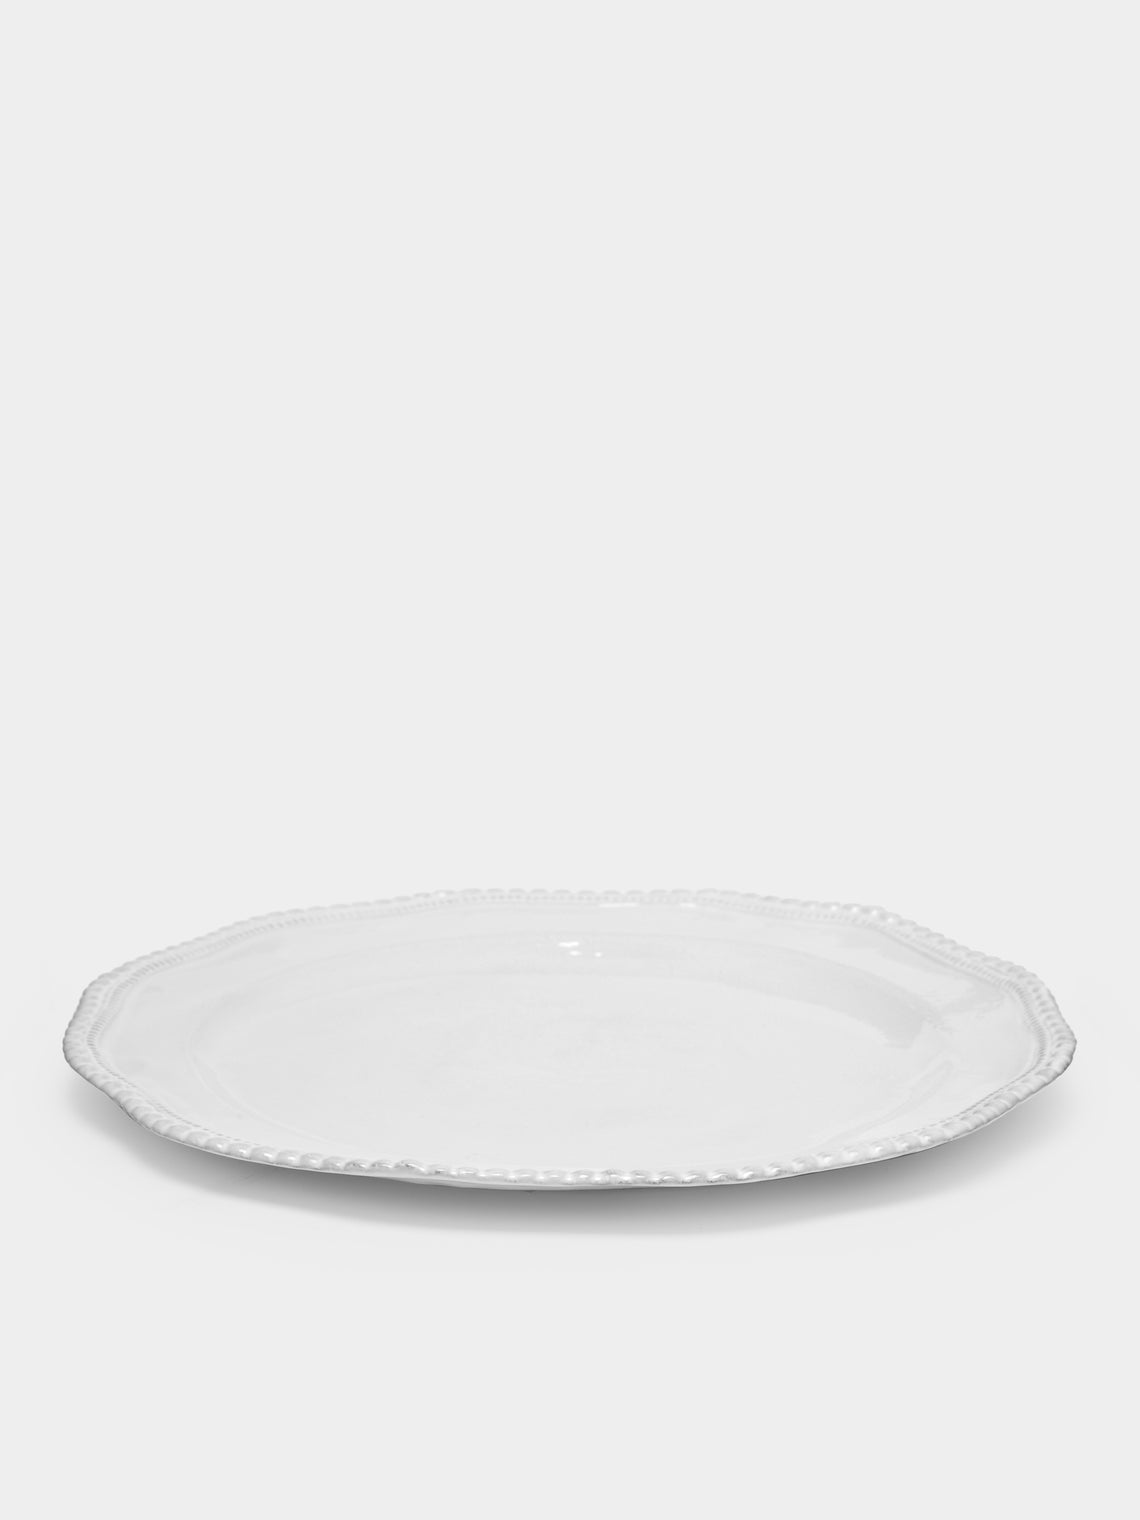 Astier de Villatte - Clarabelle Dinner Plate -  - ABASK